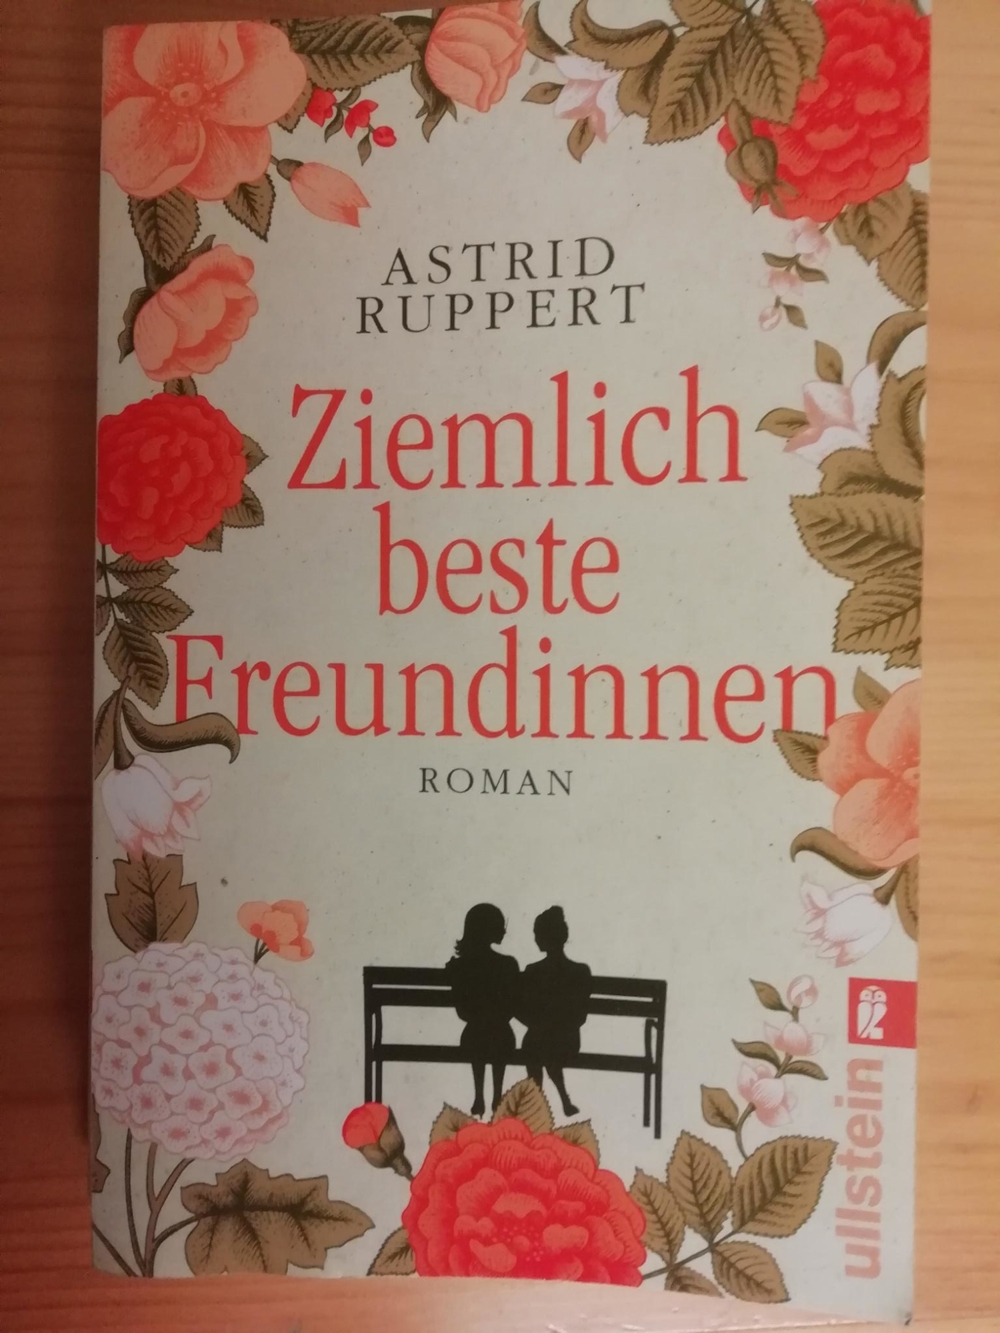 Ziemlich beste Freundinnen - Astrid Ruppert - Softcoverroman